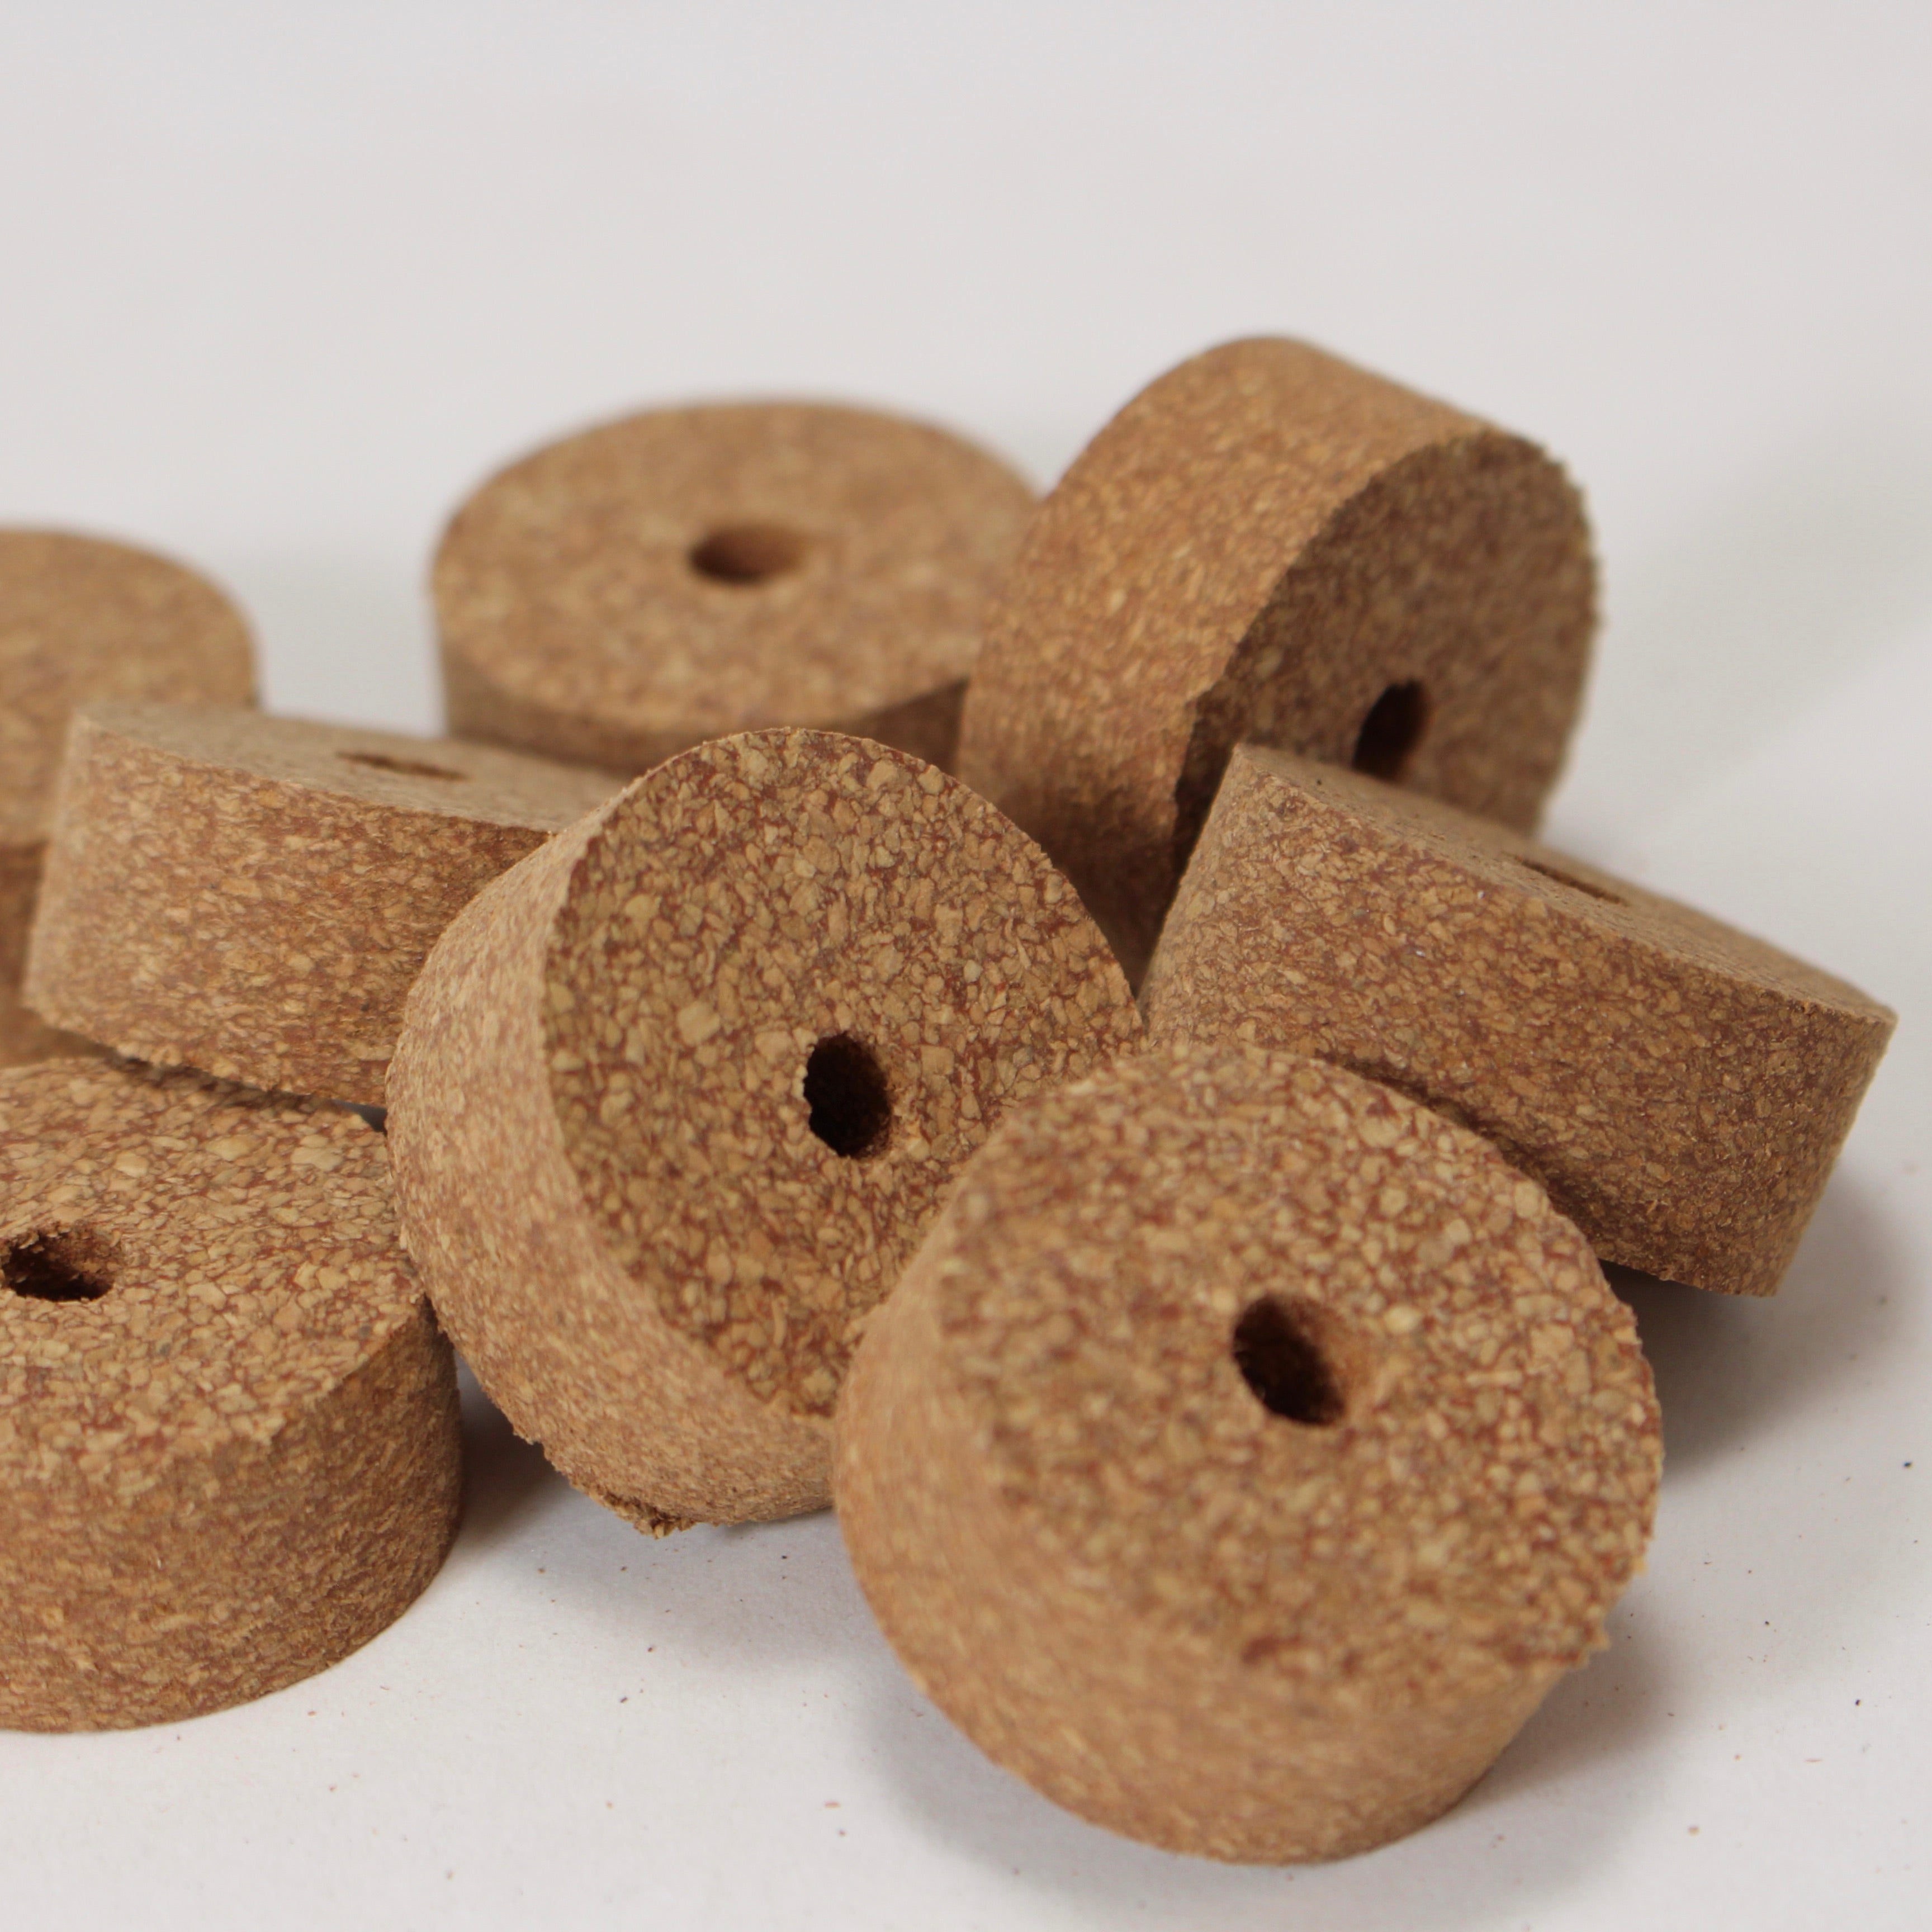 Red fine grain rubber cork ring 1 1/4 x 1/2 with 1/4 bore